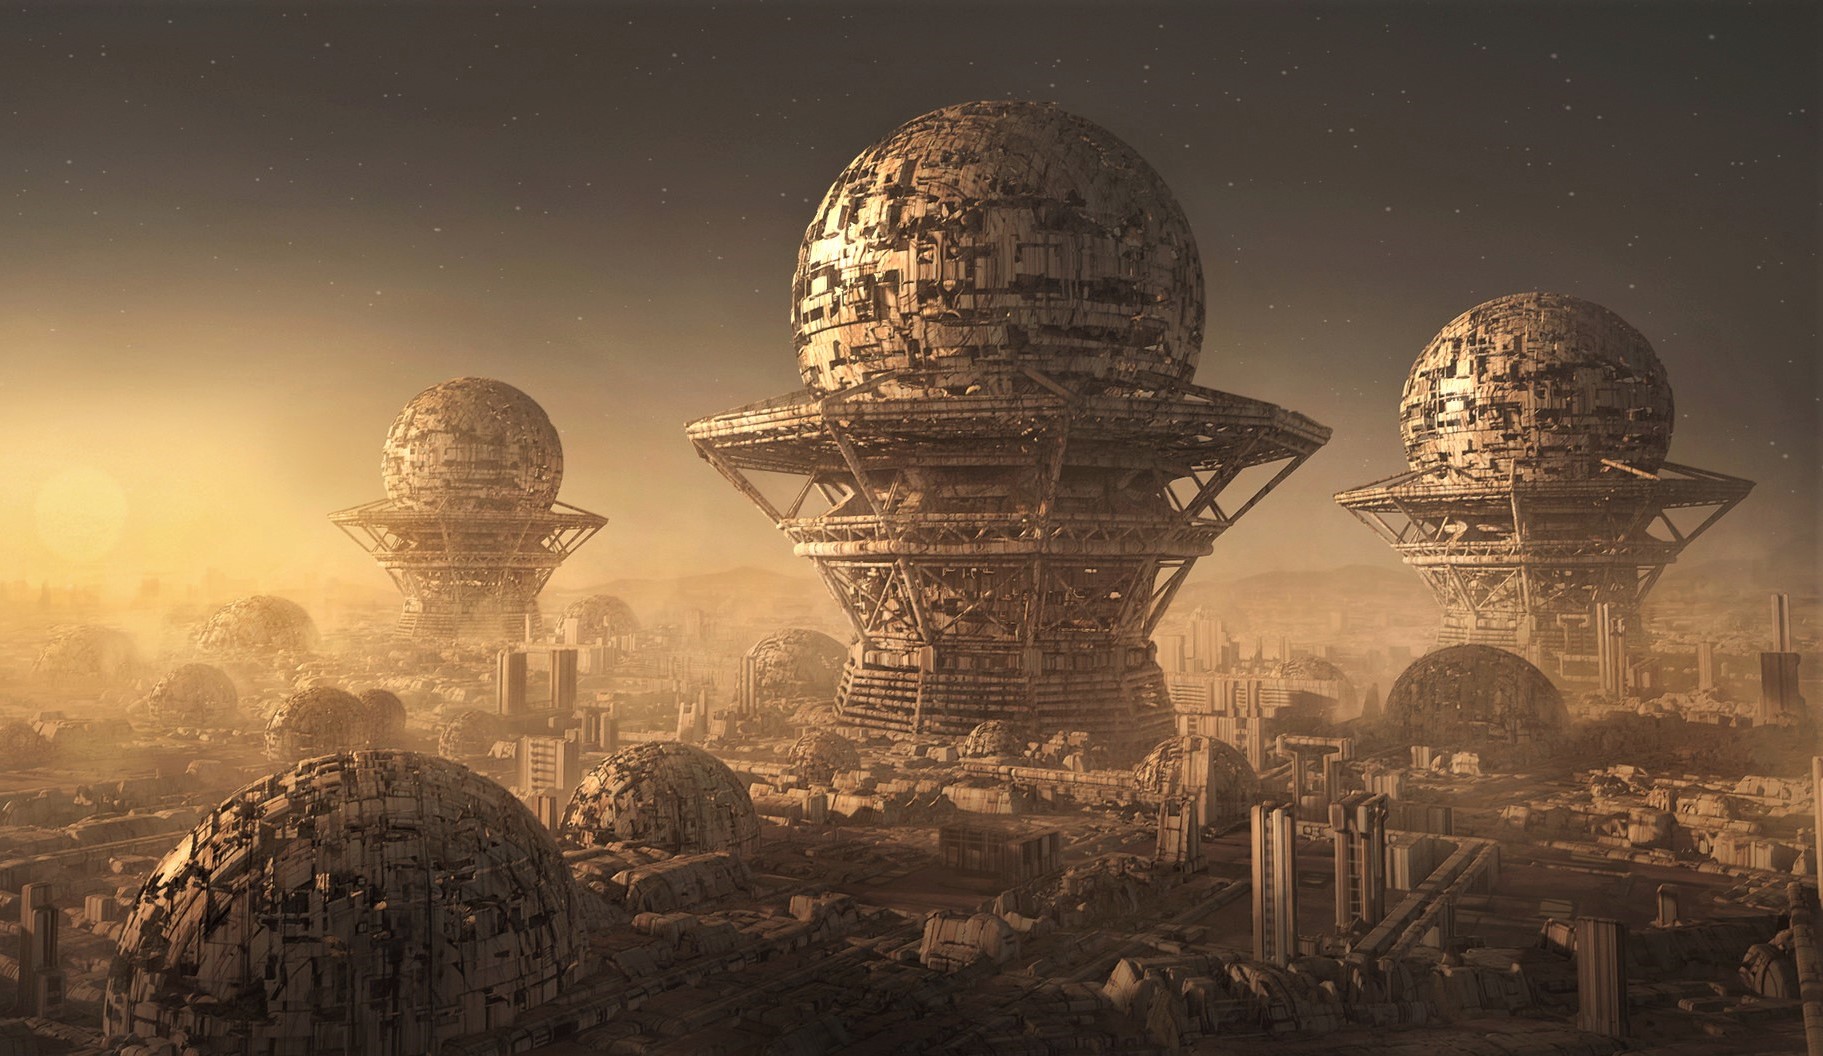 Investigador asegura haber encontrado una ciudad alienígena en Titán (Saturno)